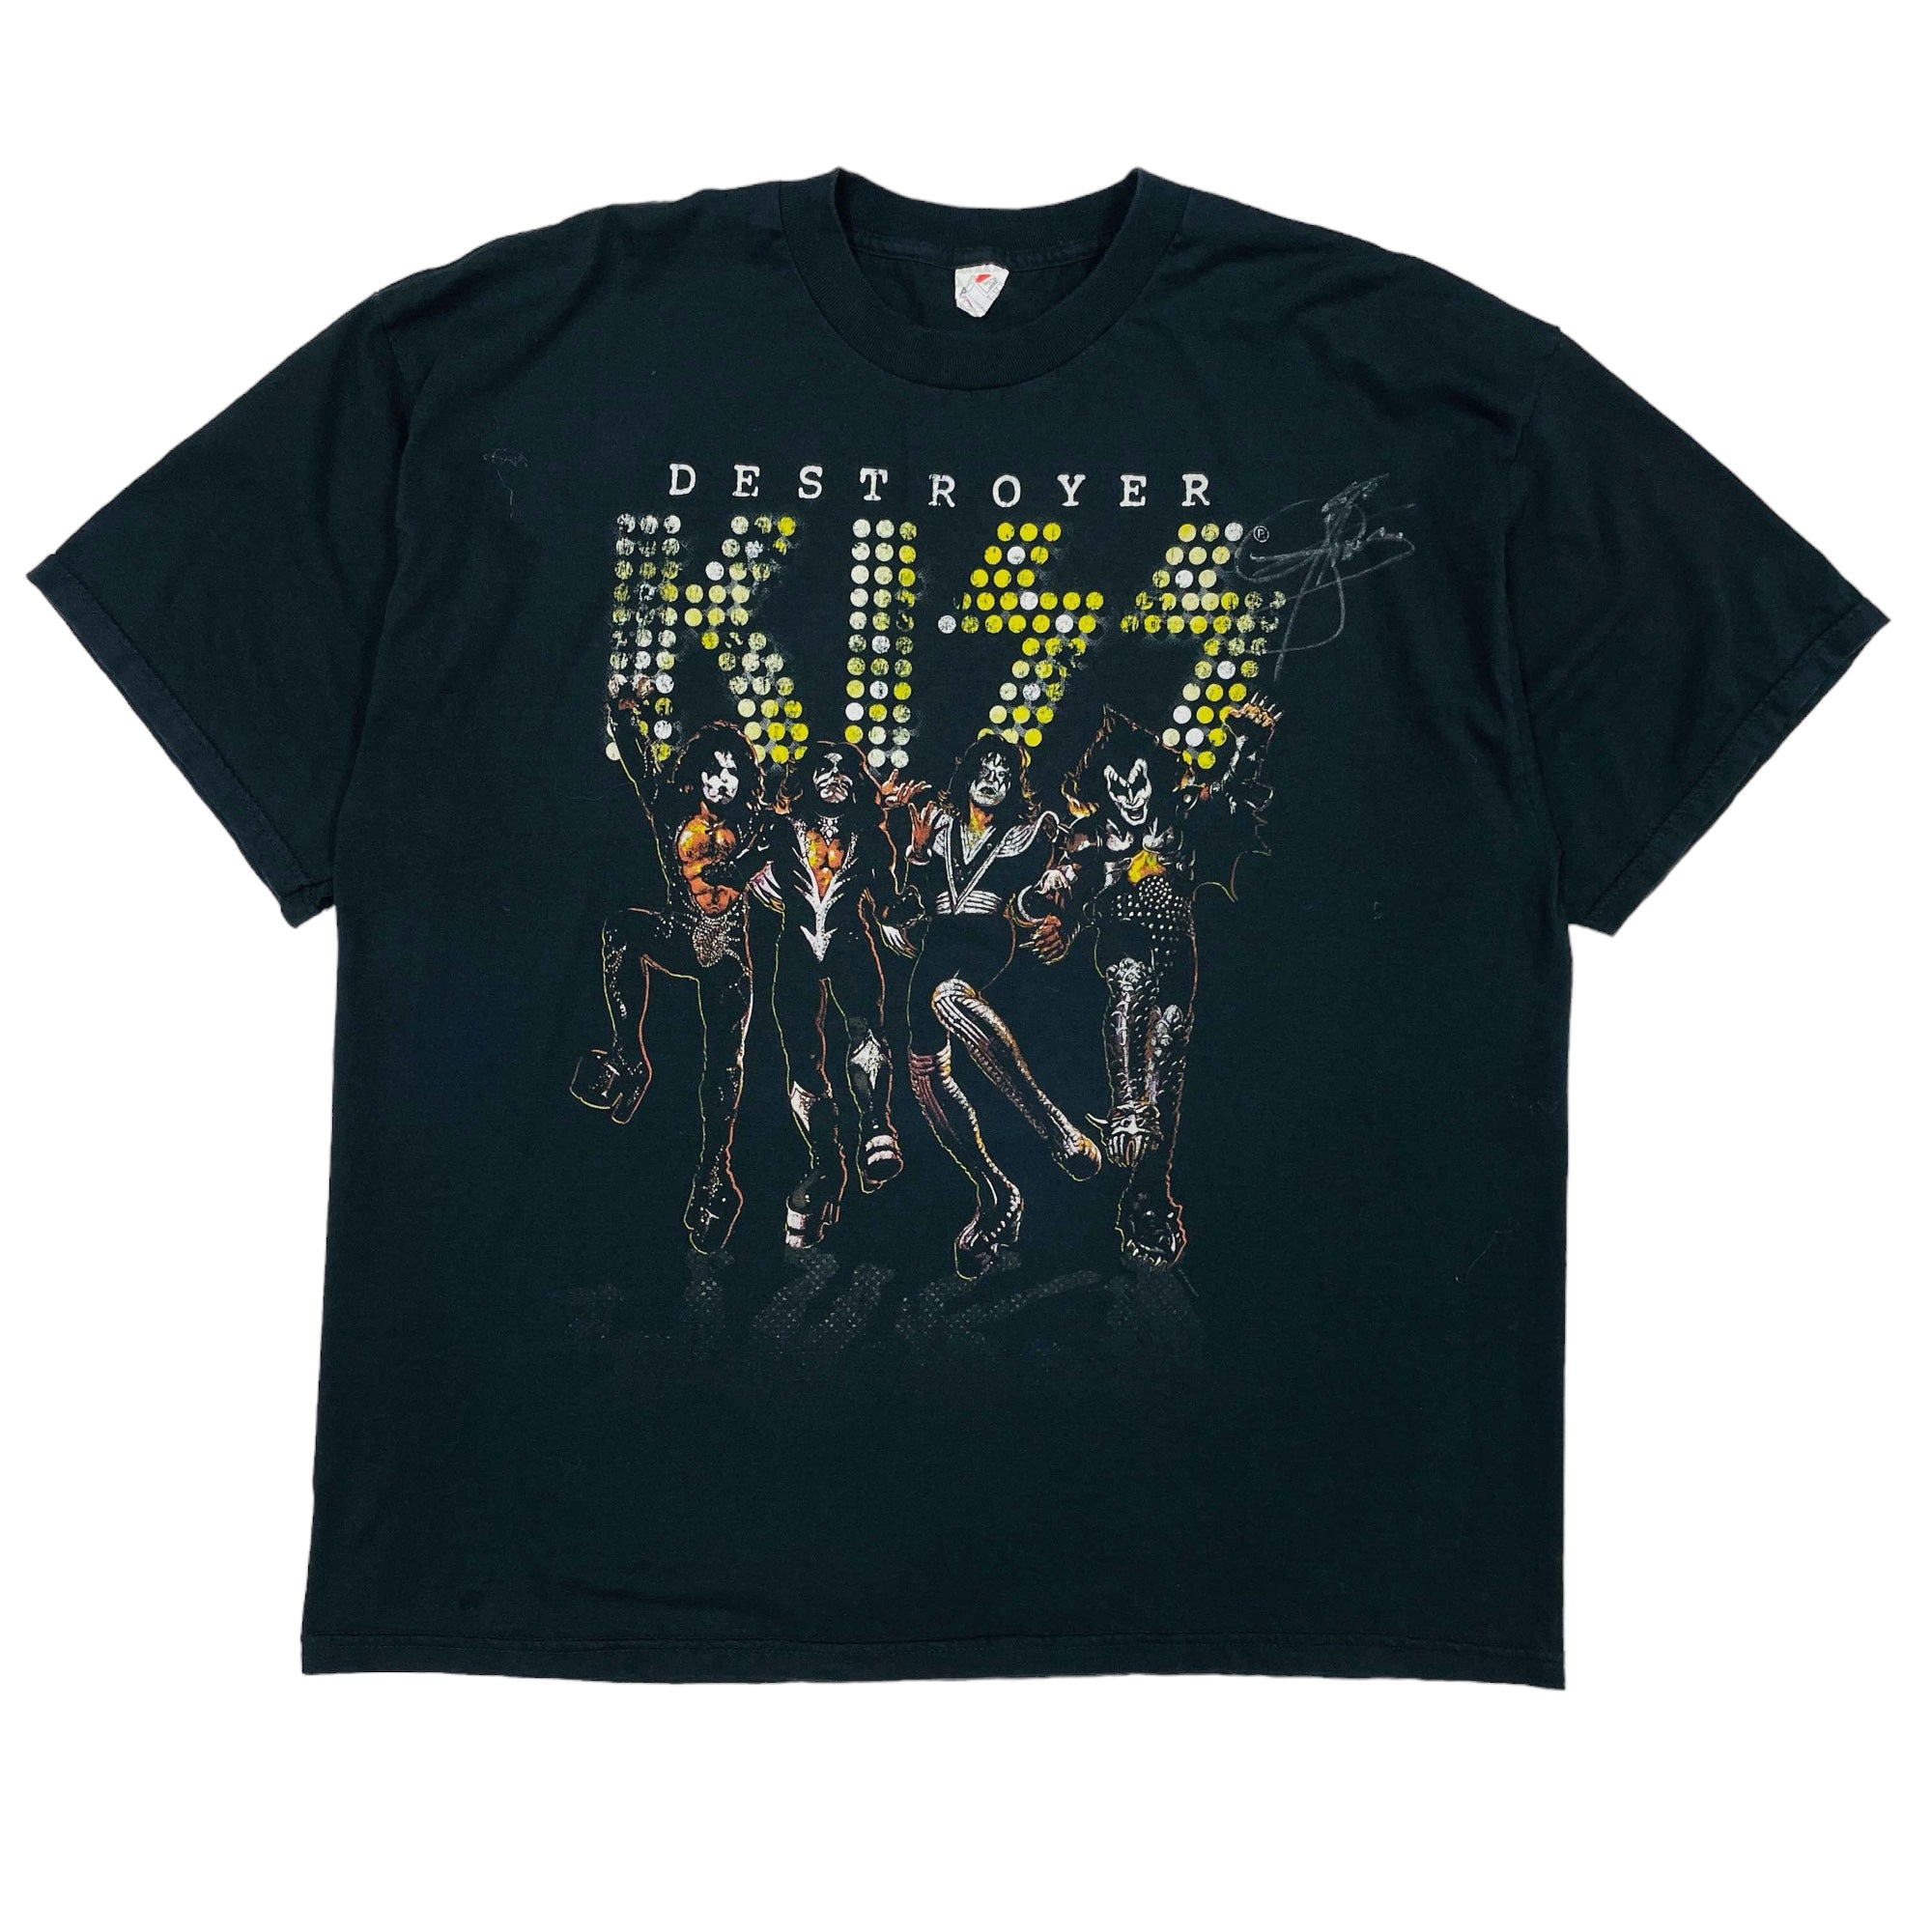 KISS Destroyer Band T-Shirt - 3XL